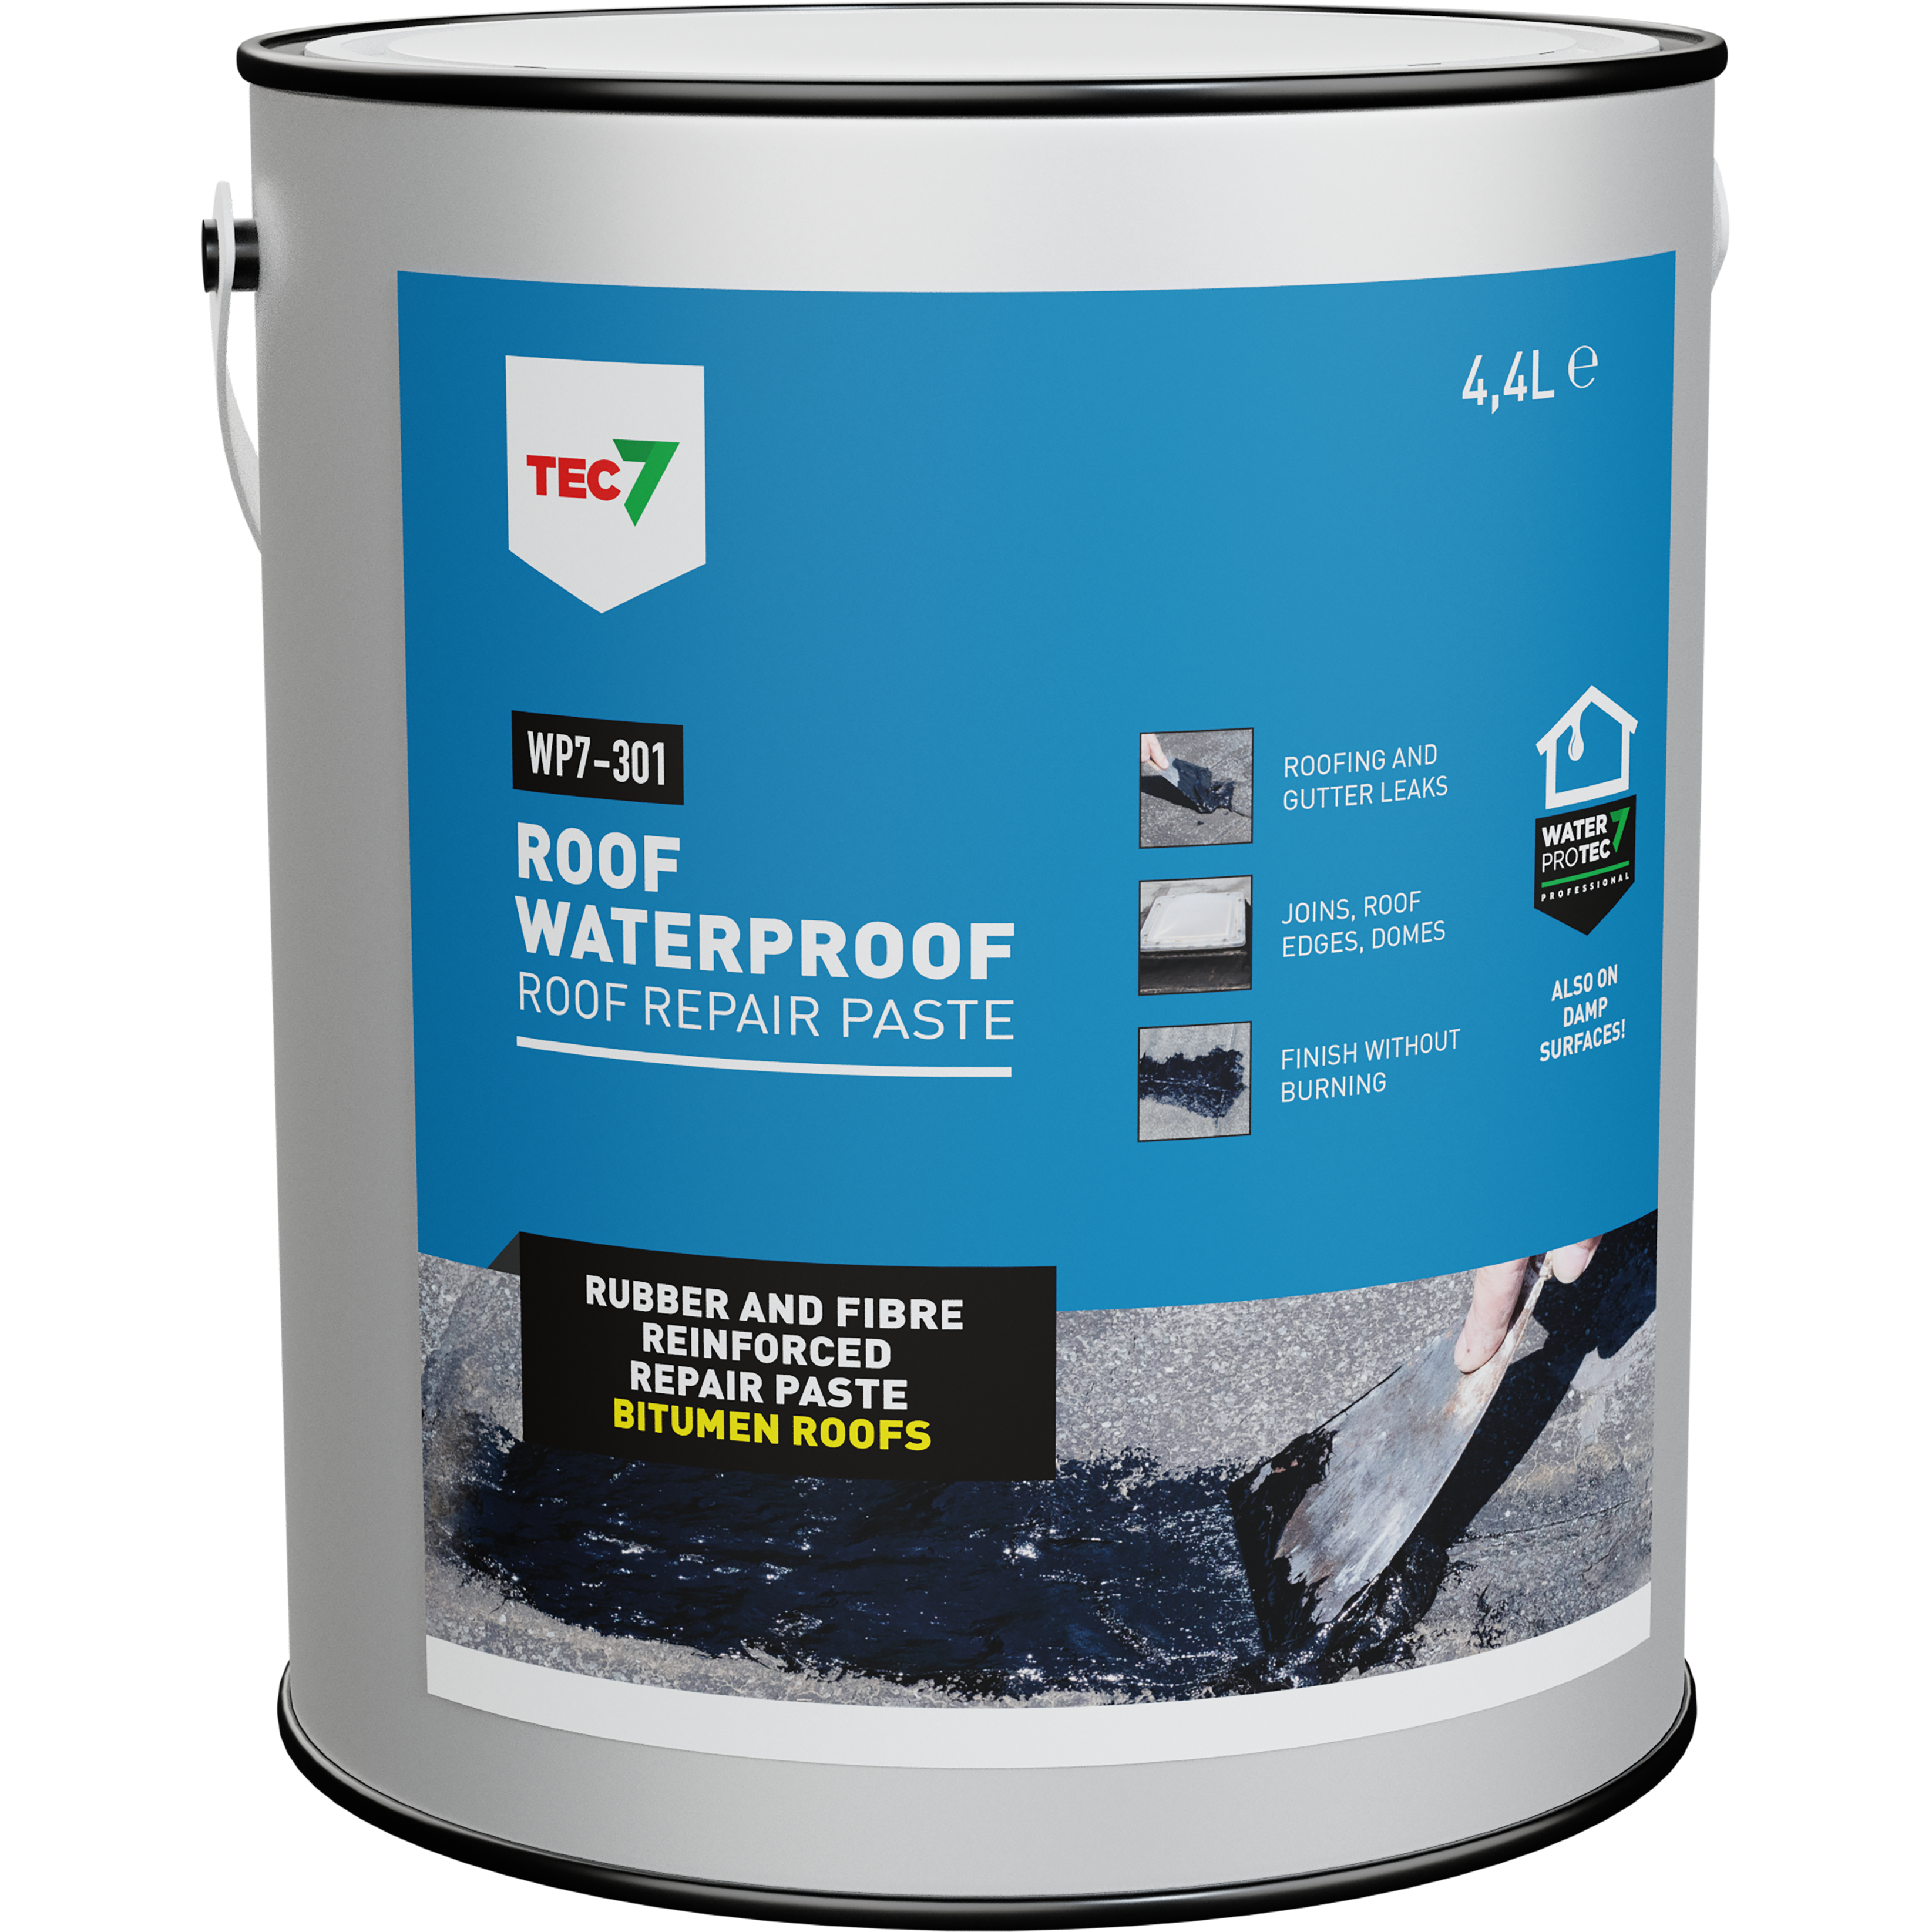 Tec7 Roof Waterproof Repair Paste WP7-301